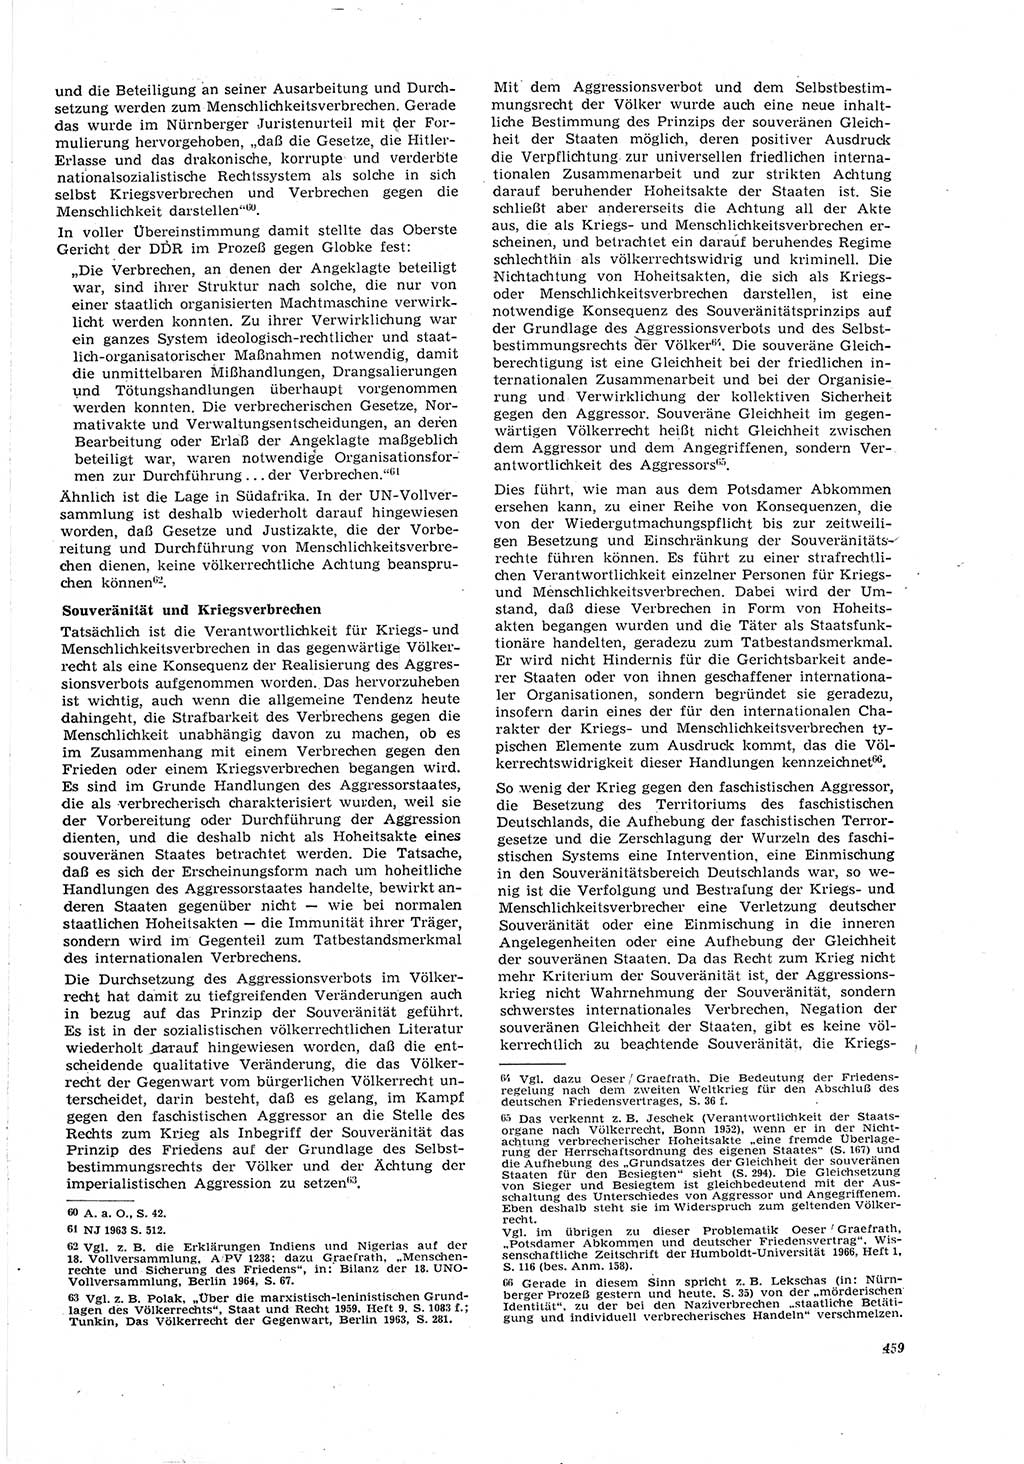 Neue Justiz (NJ), Zeitschrift für Recht und Rechtswissenschaft [Deutsche Demokratische Republik (DDR)], 21. Jahrgang 1967, Seite 459 (NJ DDR 1967, S. 459)